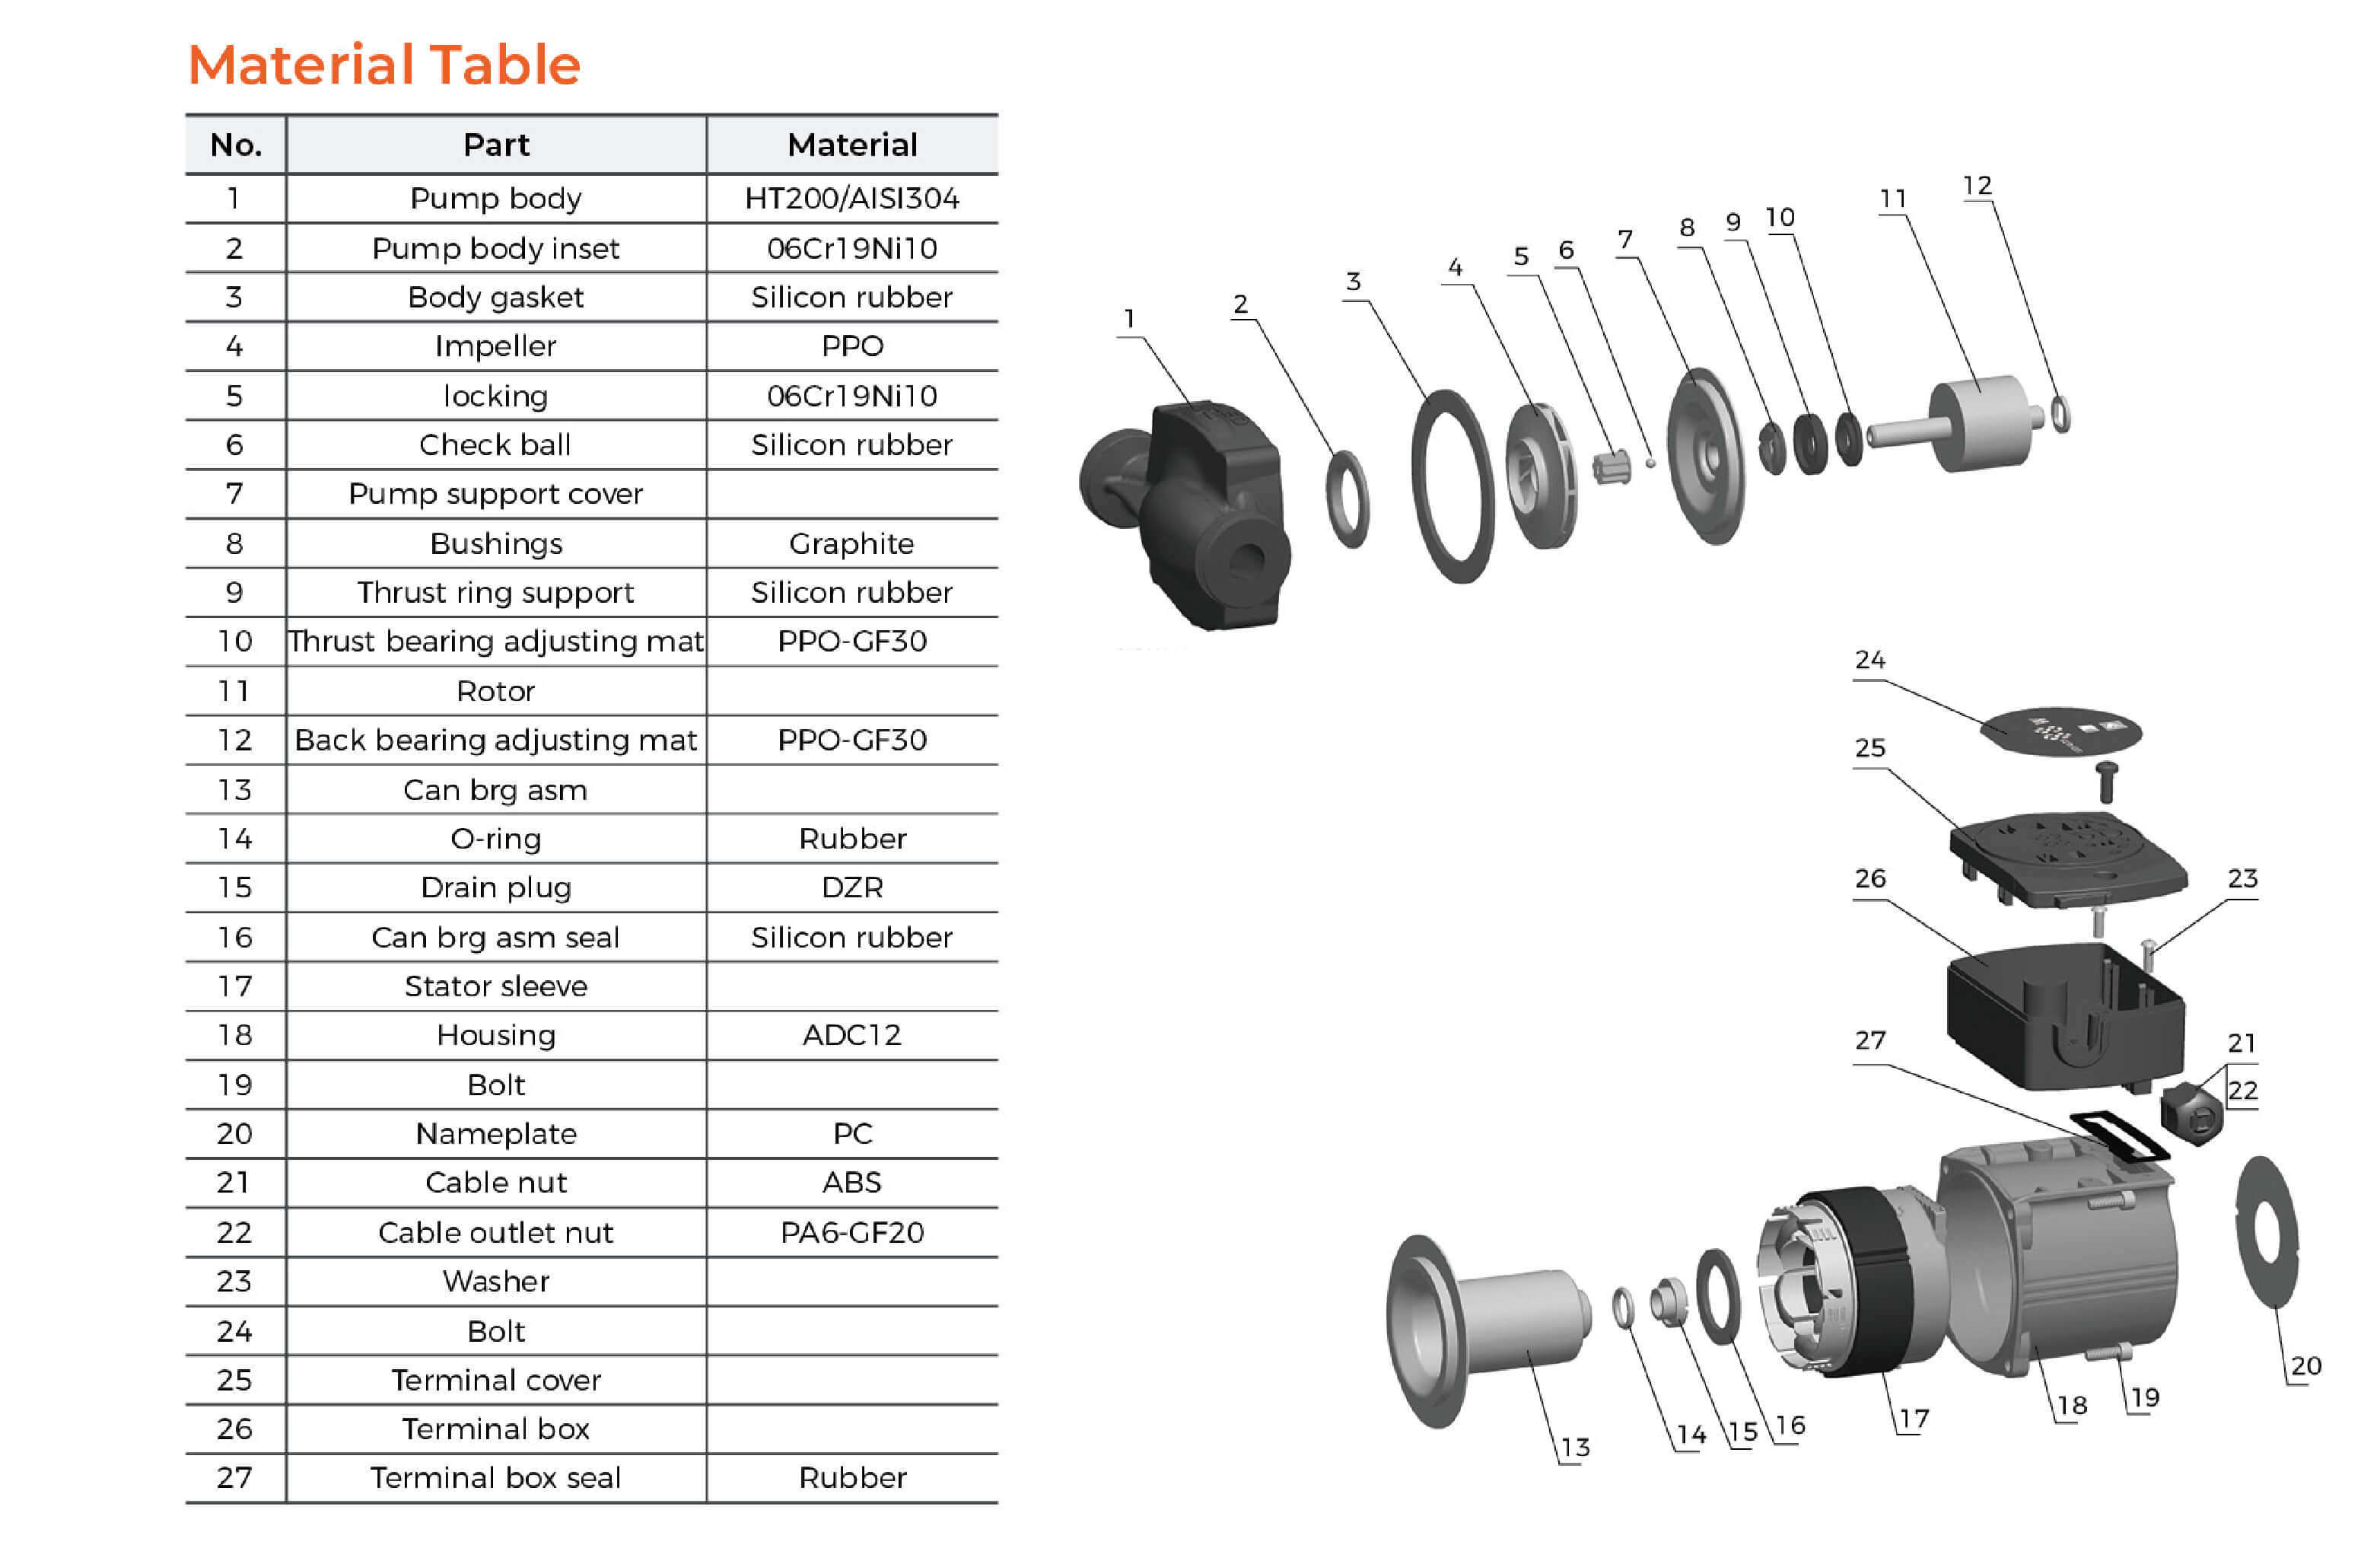 ARP Circulation Pump Material Table